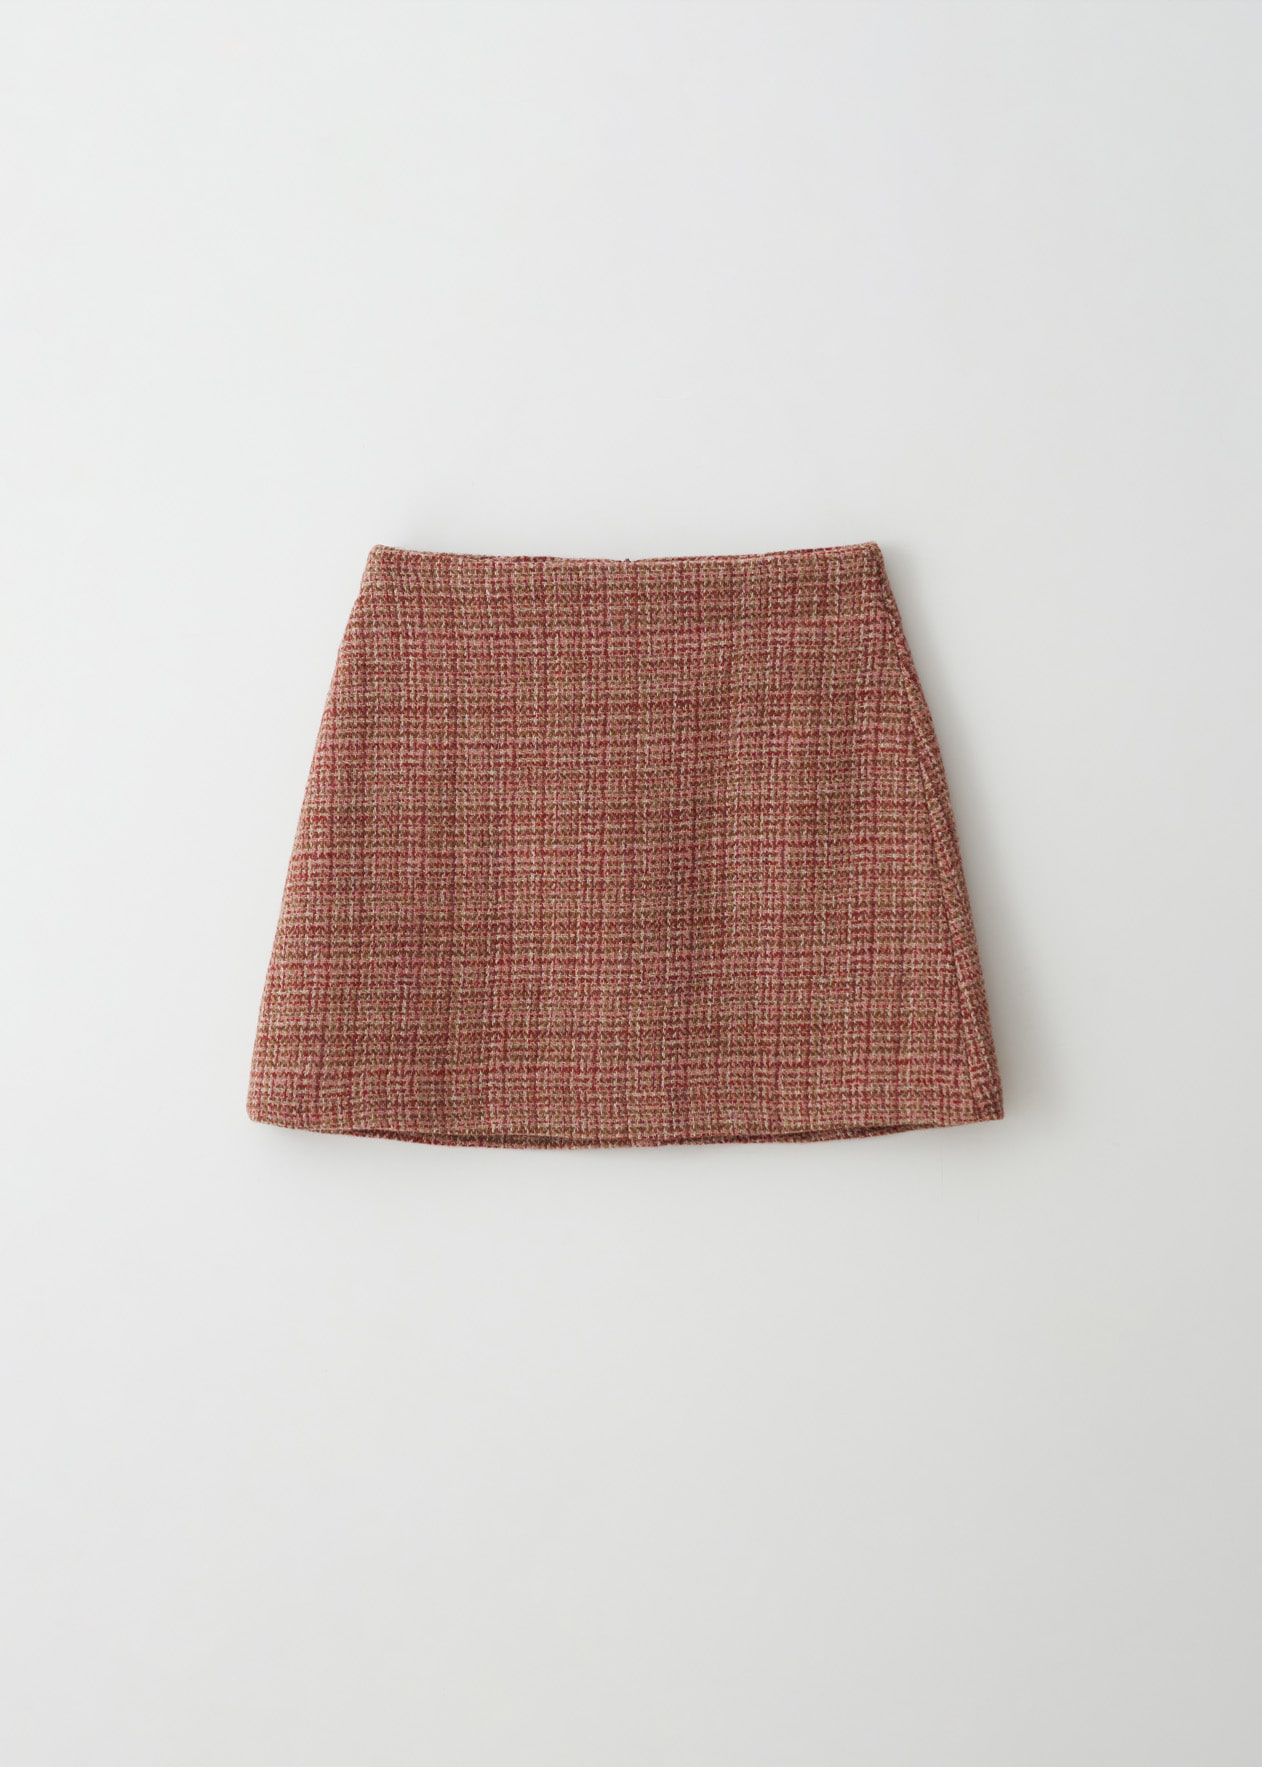 SALE_Harris tweed mini skirt